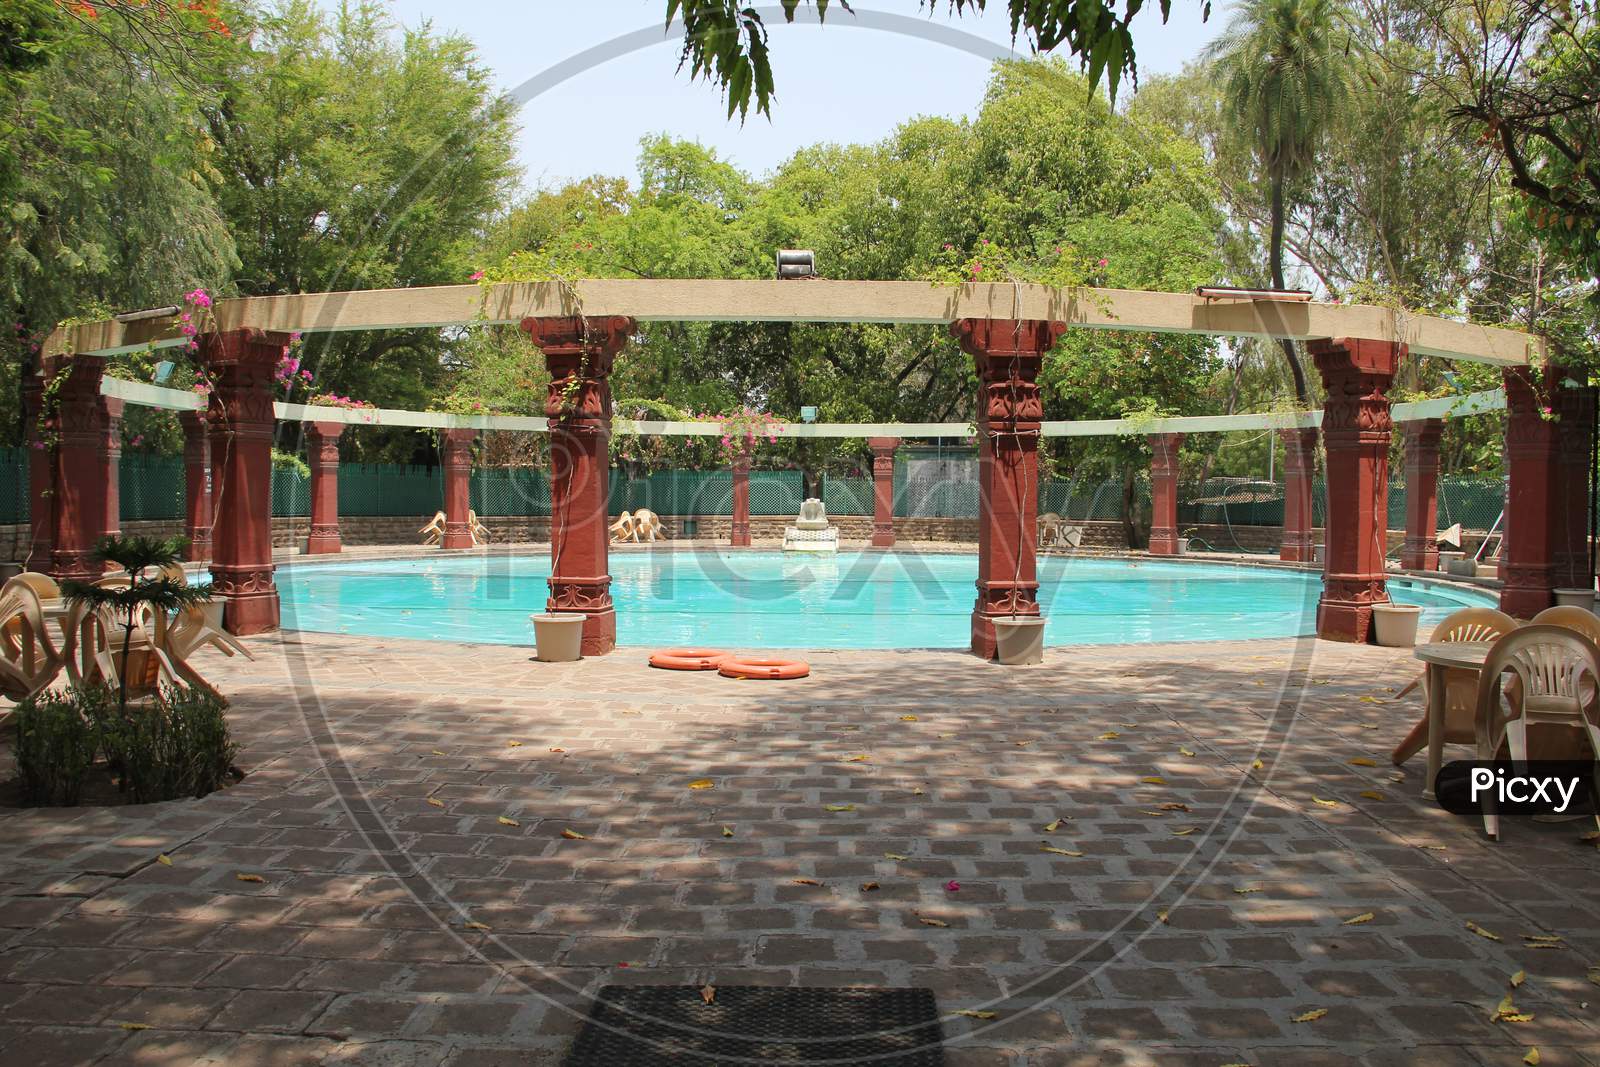 Swimming Pool in Resort of Junagadh